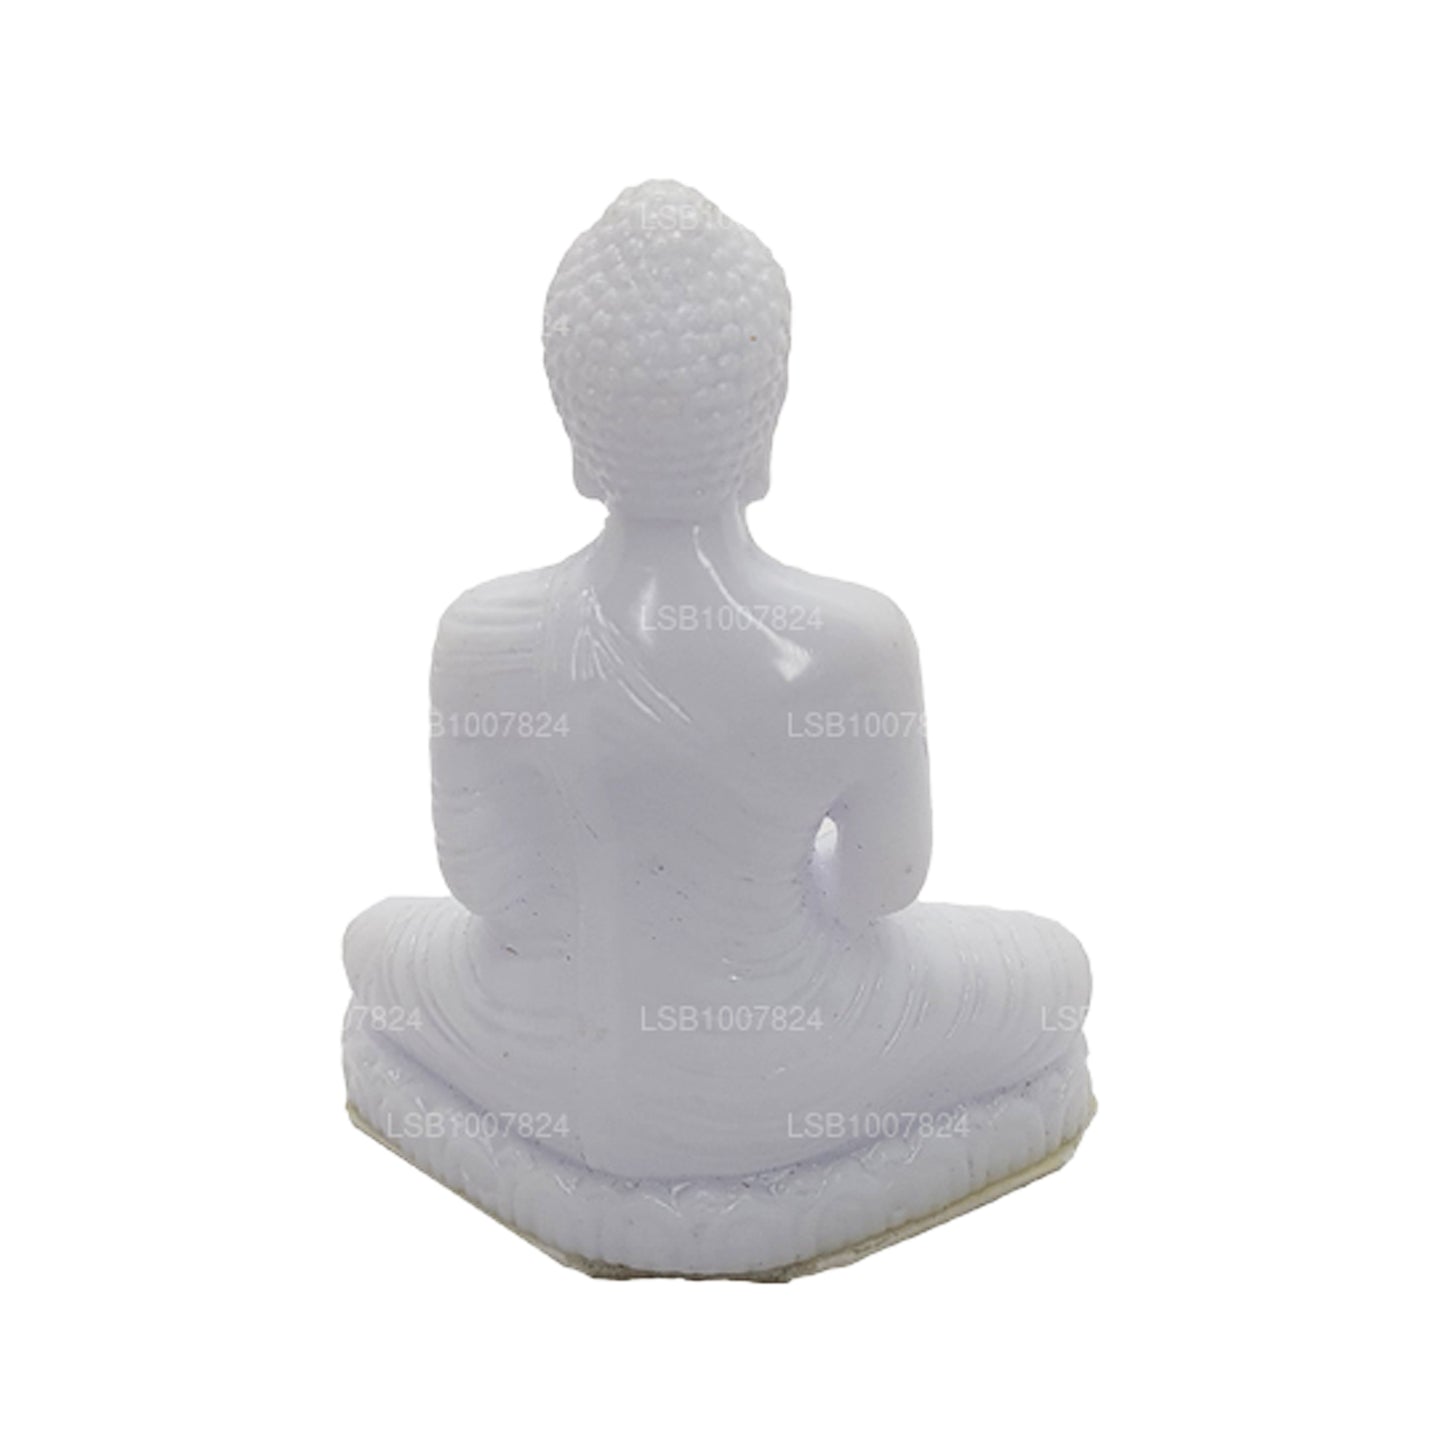 Статуя Будды (белый цвет) для приборной панели автомобиля (7 см x 3 см)